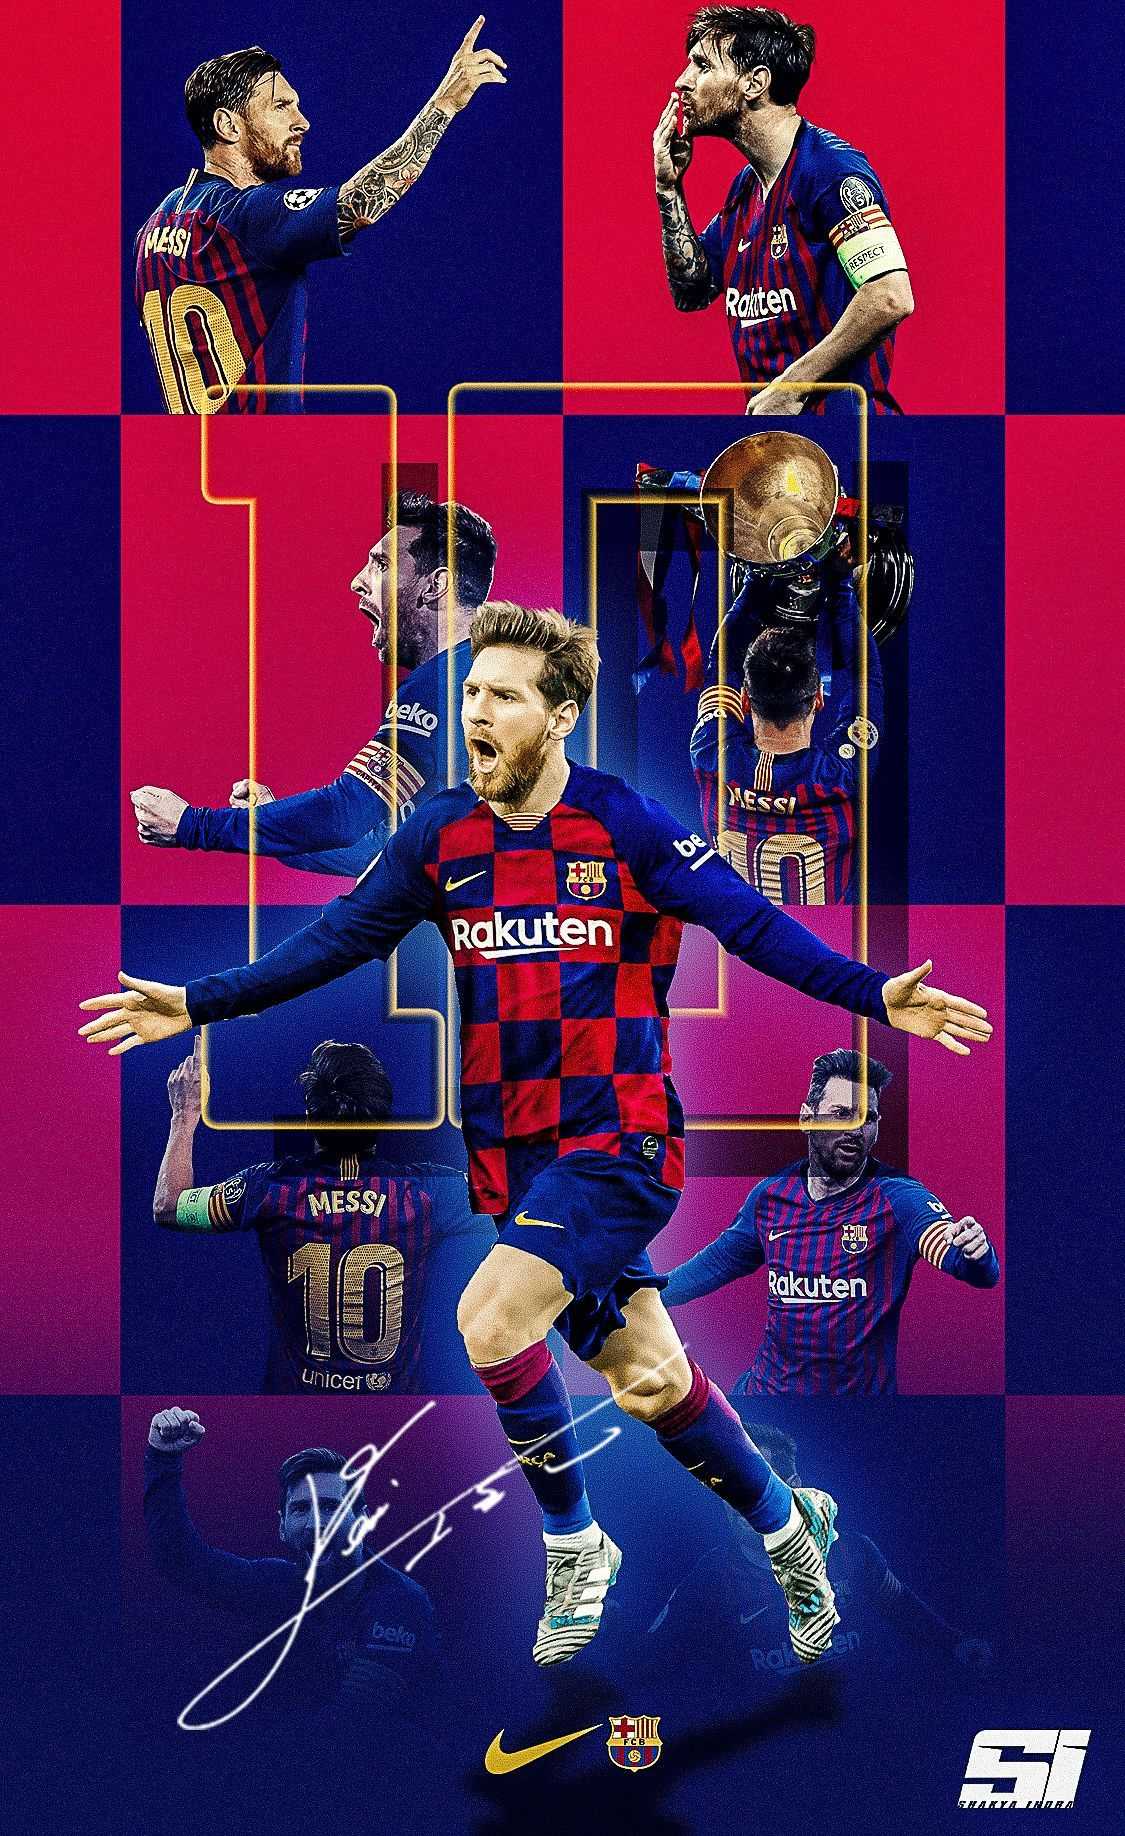 Sự nổi tiếng của Messi không chỉ được biểu đạt qua các chiến thắng trên sân cỏ, mà còn được thể hiện qua việc trở thành hình nền cho iPhone. Hãy ngắm nhìn những hình ảnh tuyệt đẹp từ Messi wallpaper cho iPhone để cảm nhận được sự hiện hữu của vị đại ca bóng đá này.